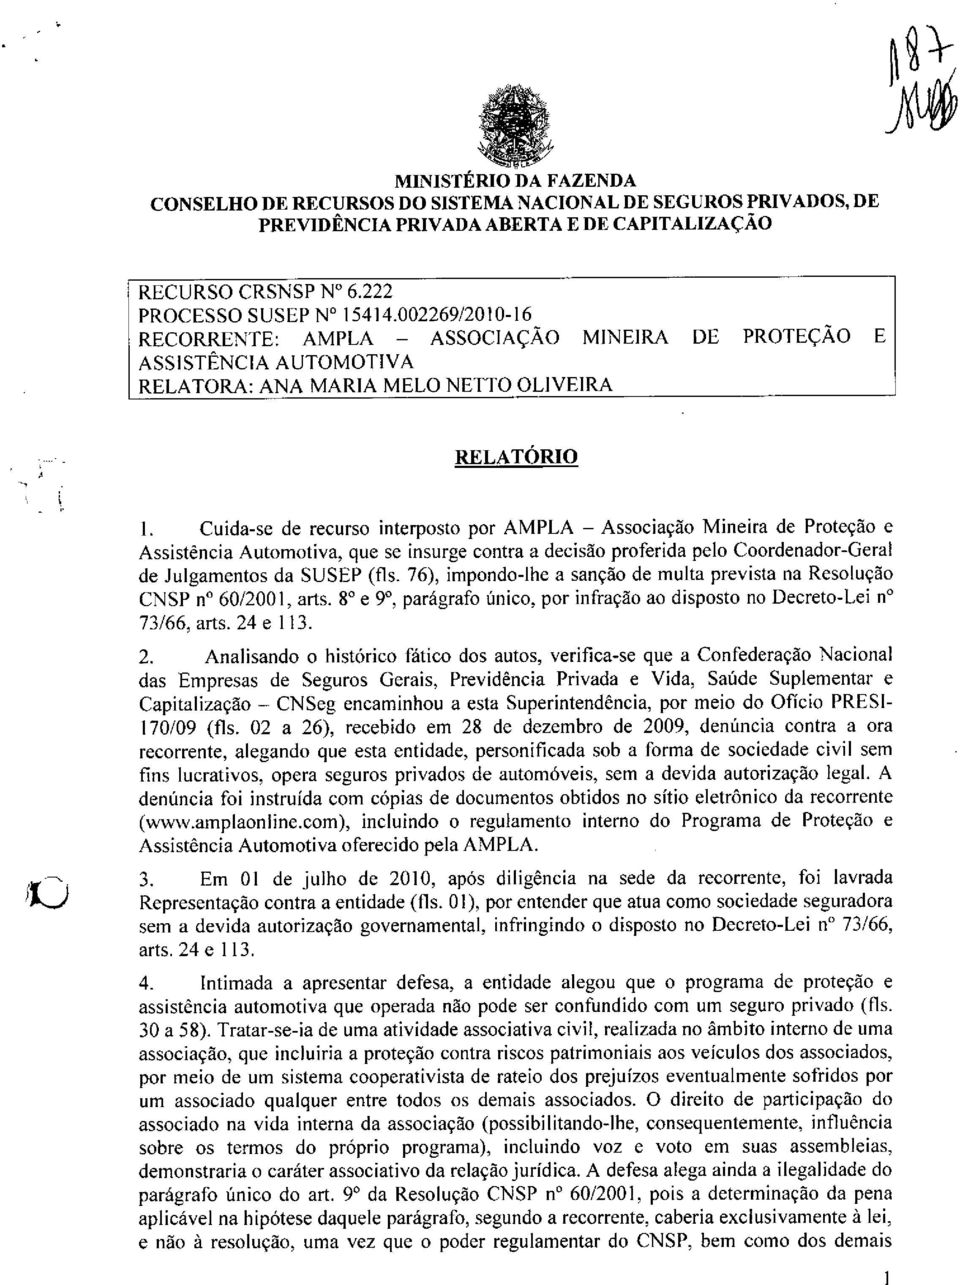 Mineira de ProteçAo e Assisténcia Automotiva, que se insurge contra a decisao proferida pelo Coordenador-Geral de Julgamentos da SUSEP (fis.